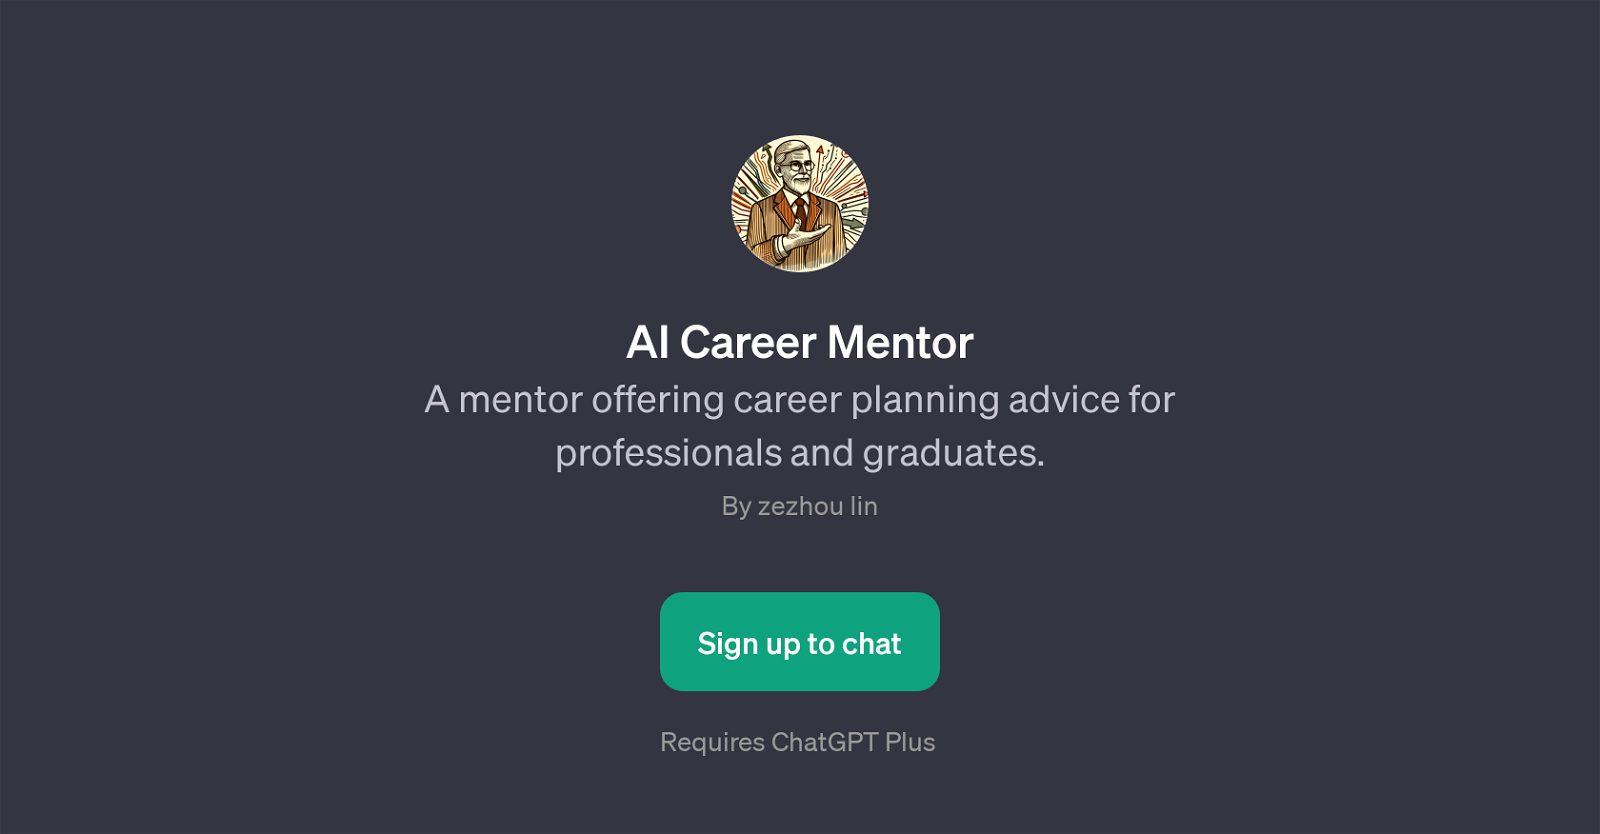 AI Career Mentor website